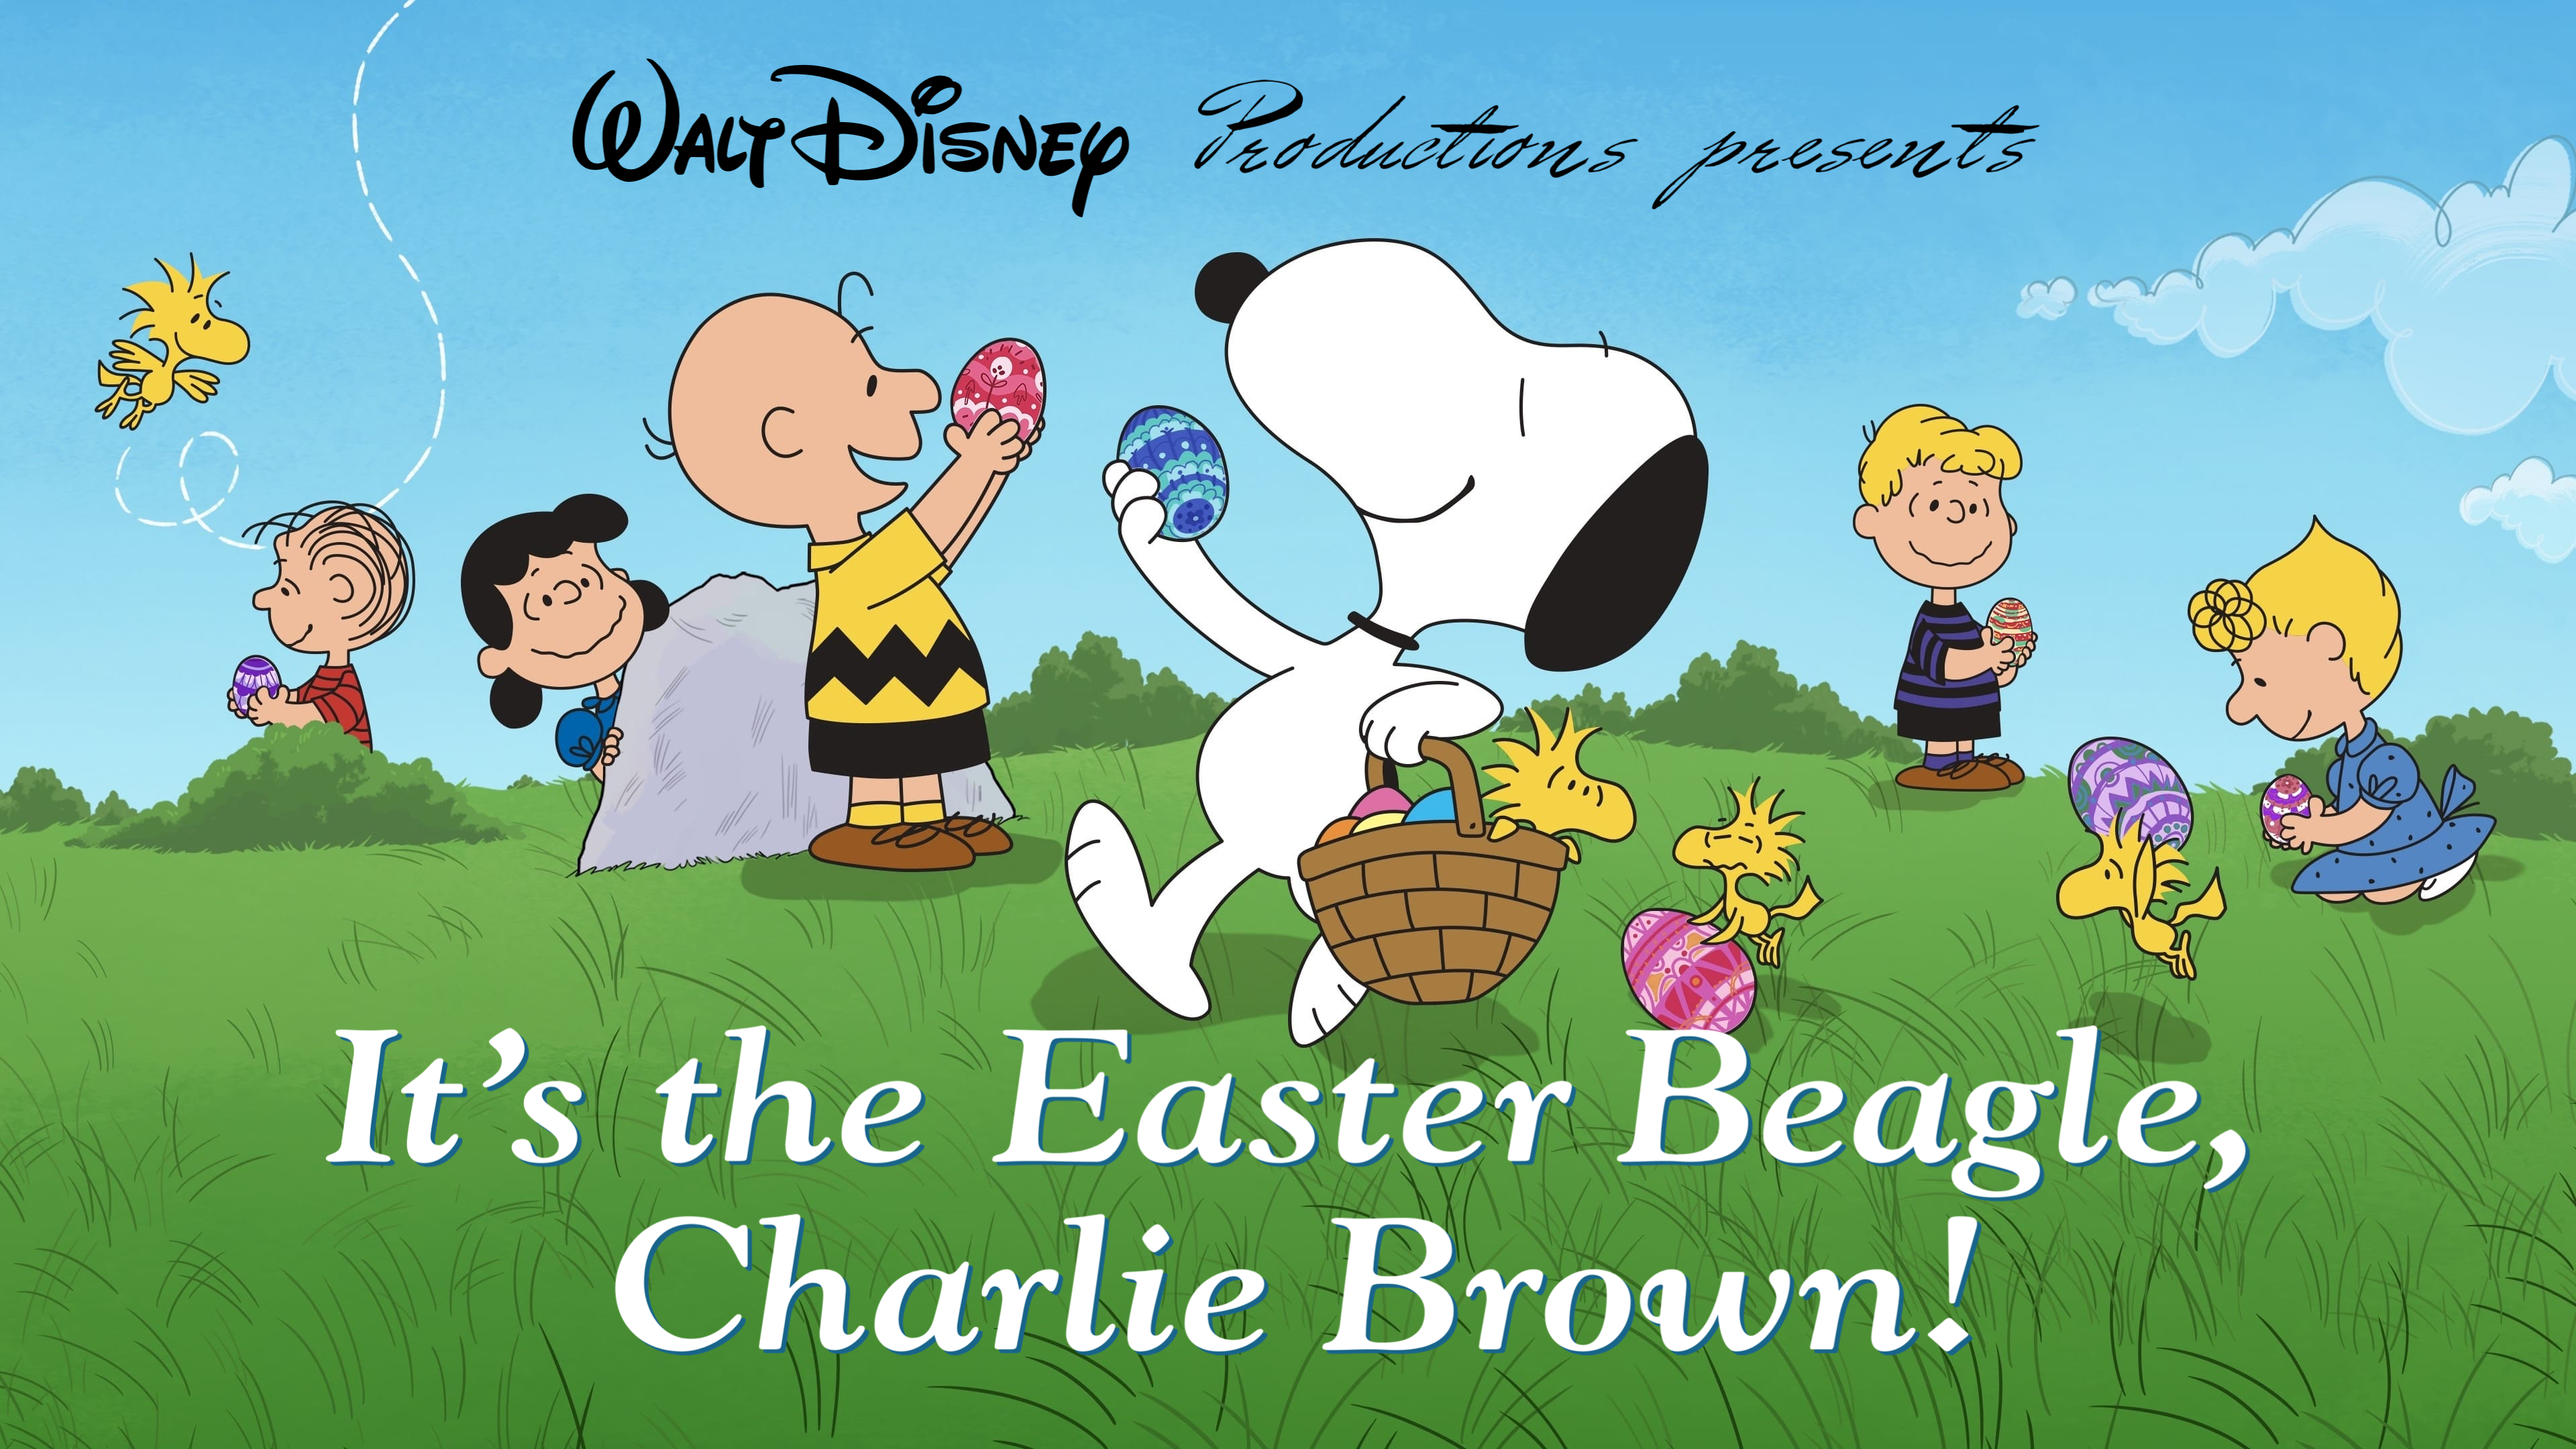 Beagle Charlie Brown Diamond Painting 